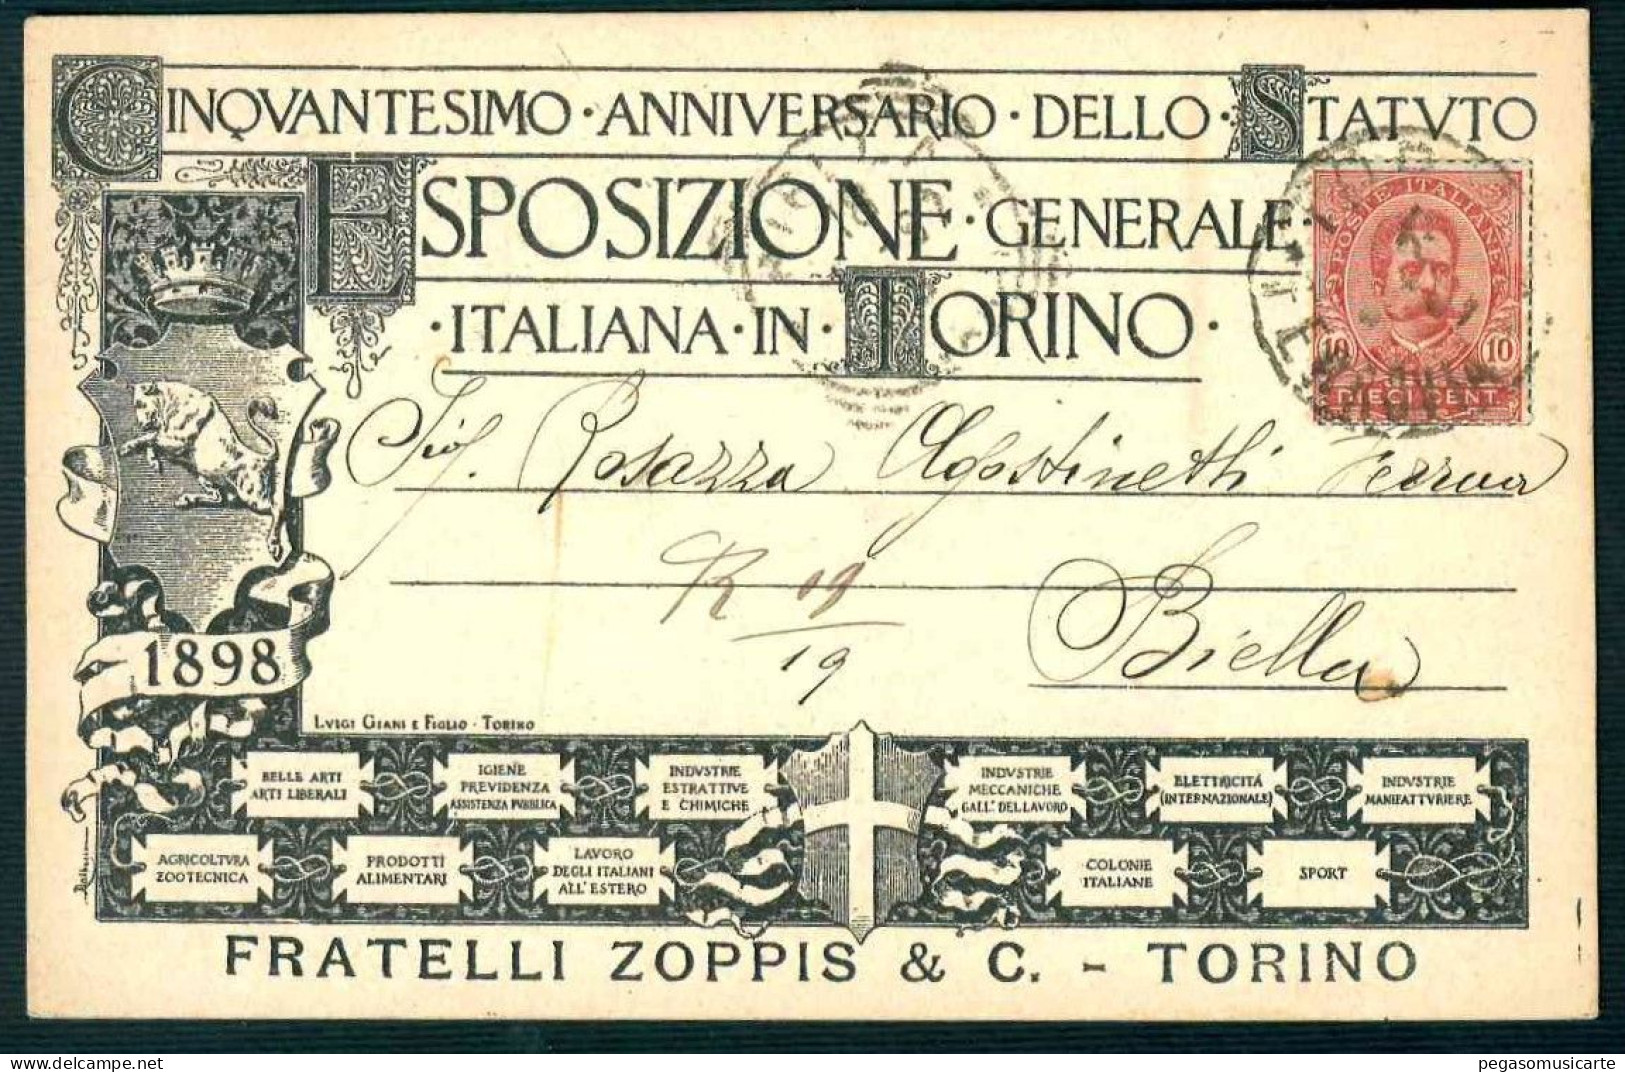 BK024 CINQUANTESIMO ANNIVERSARIO DELLO STATUTO ESPOSIZIONE GENERALE ITALIANA IN TORINO 1898 - Expositions